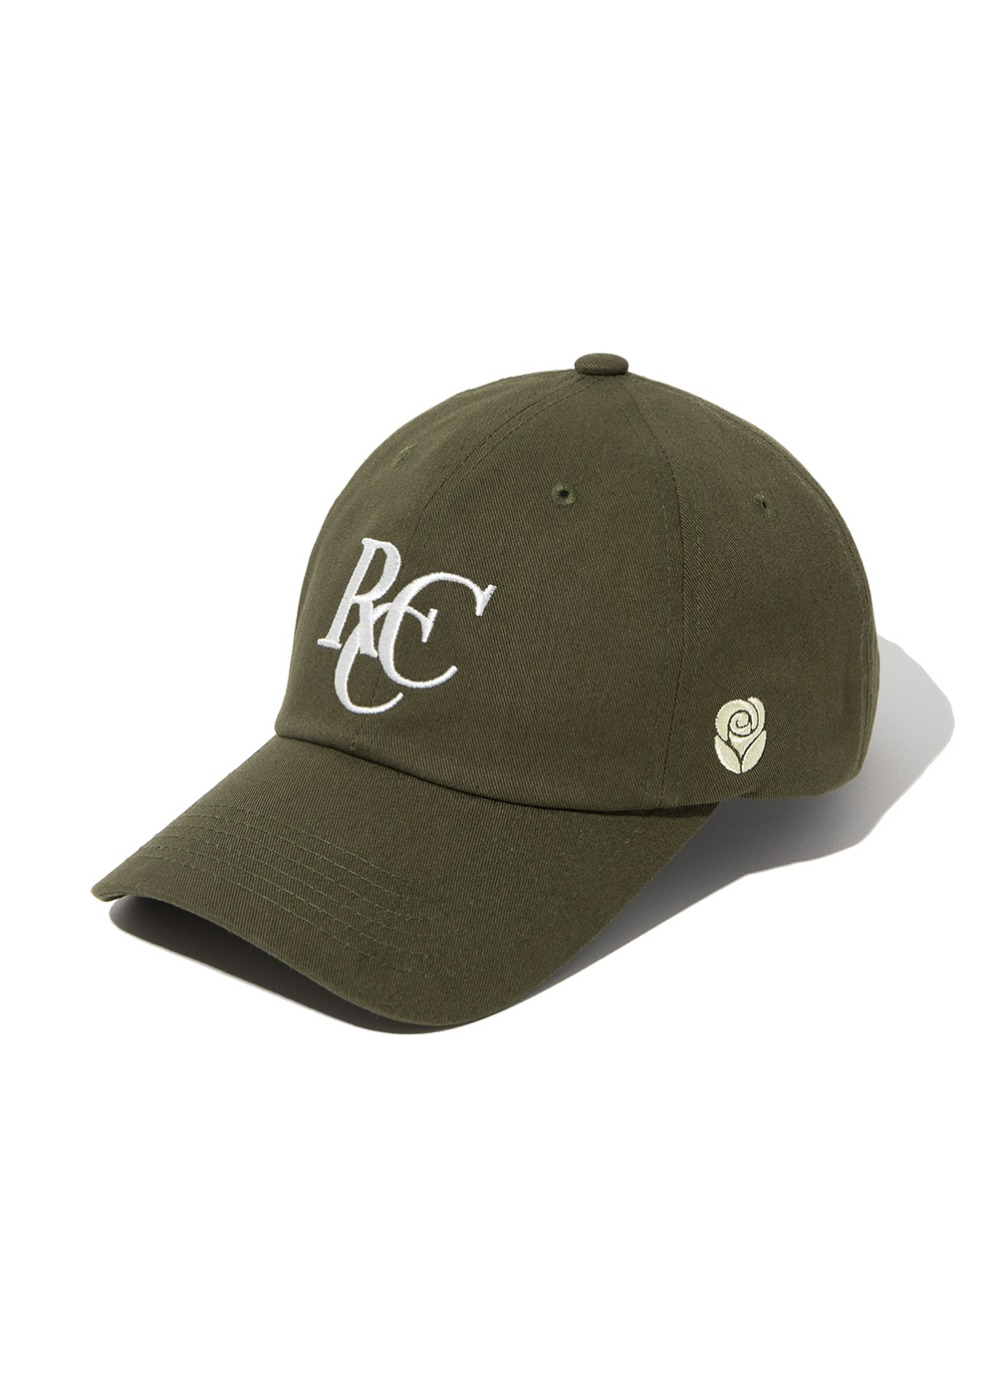 RCC Logo ball cap [KHAKI]RCC Logo ball cap [KHAKI]자체브랜드